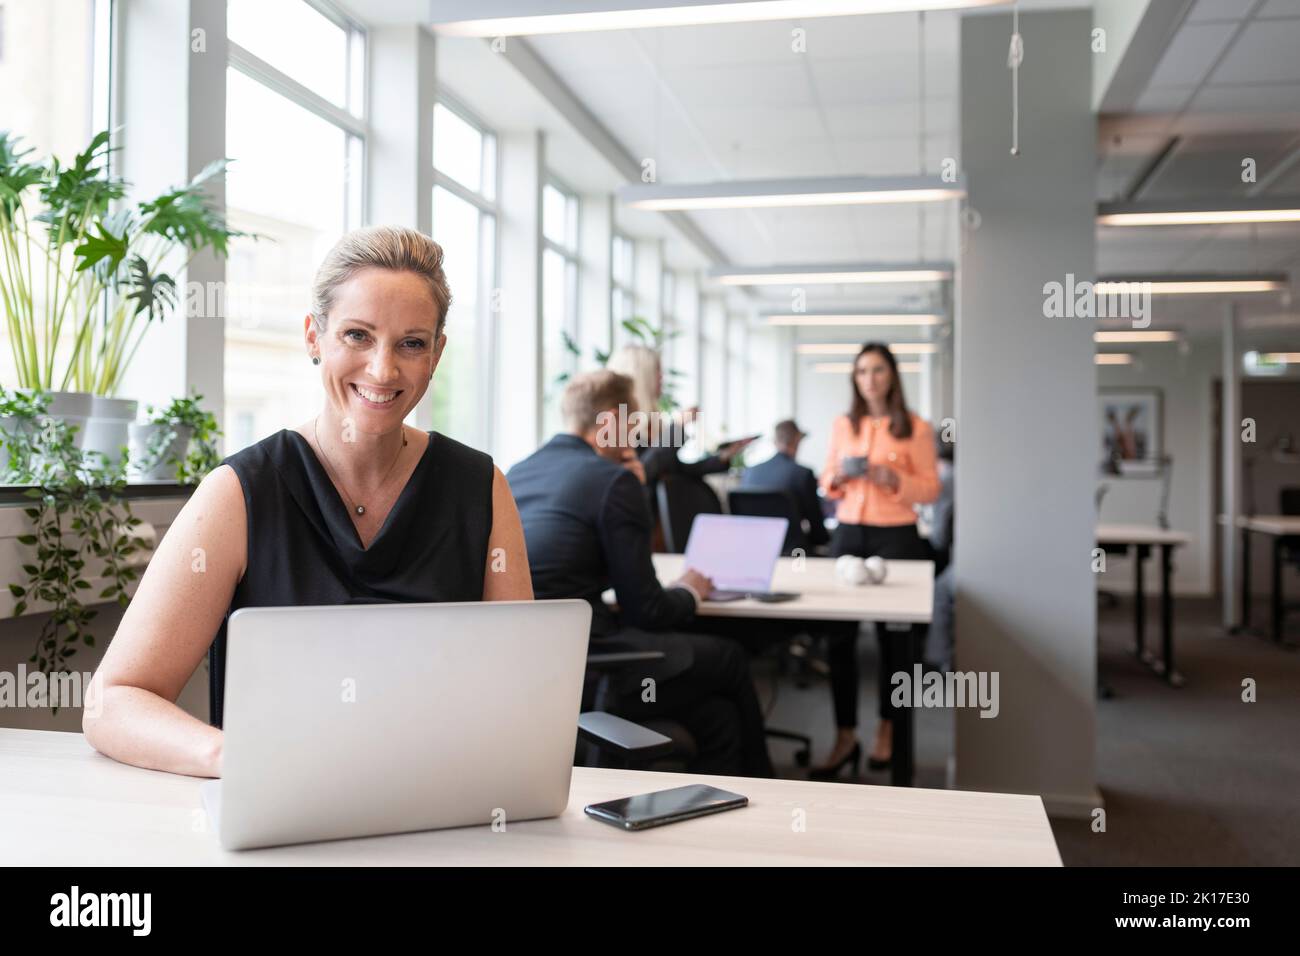 La empresaria sonriendo con laptop en la oficina Foto de stock